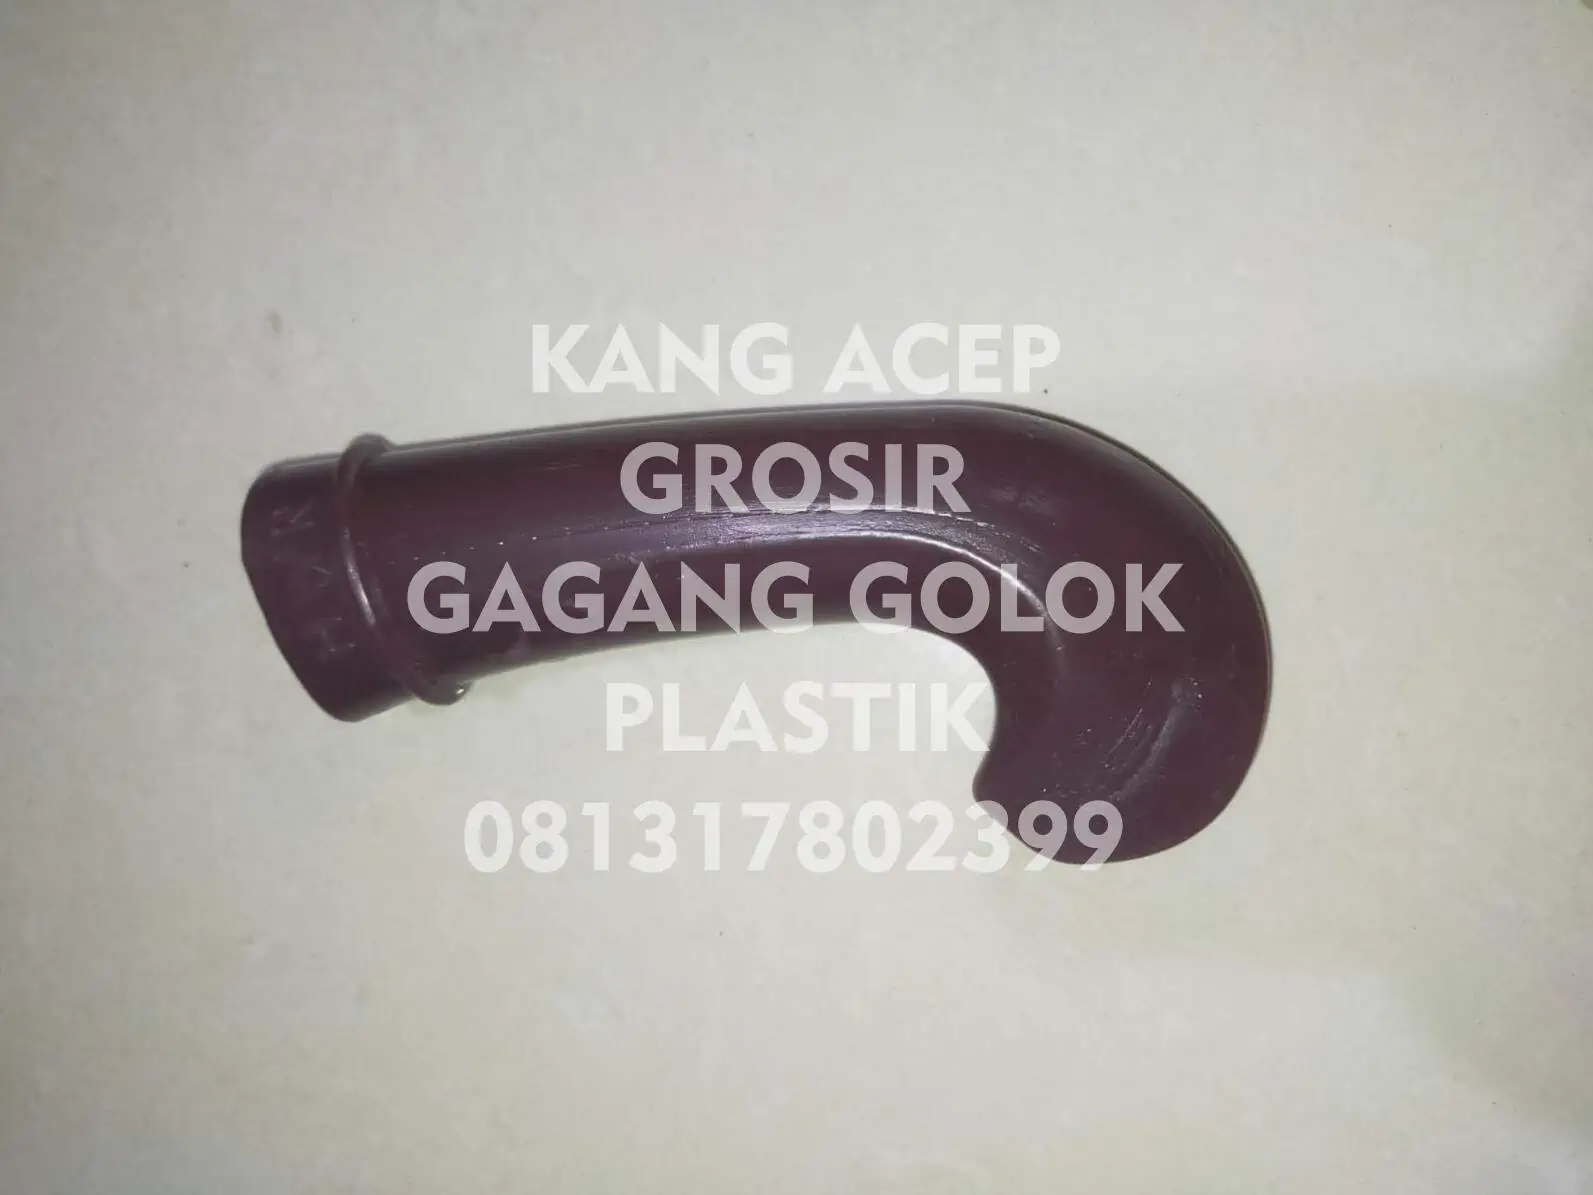 Grosir Gagang Golok Plastik di Bandung Model Polos Bengkok Coklat